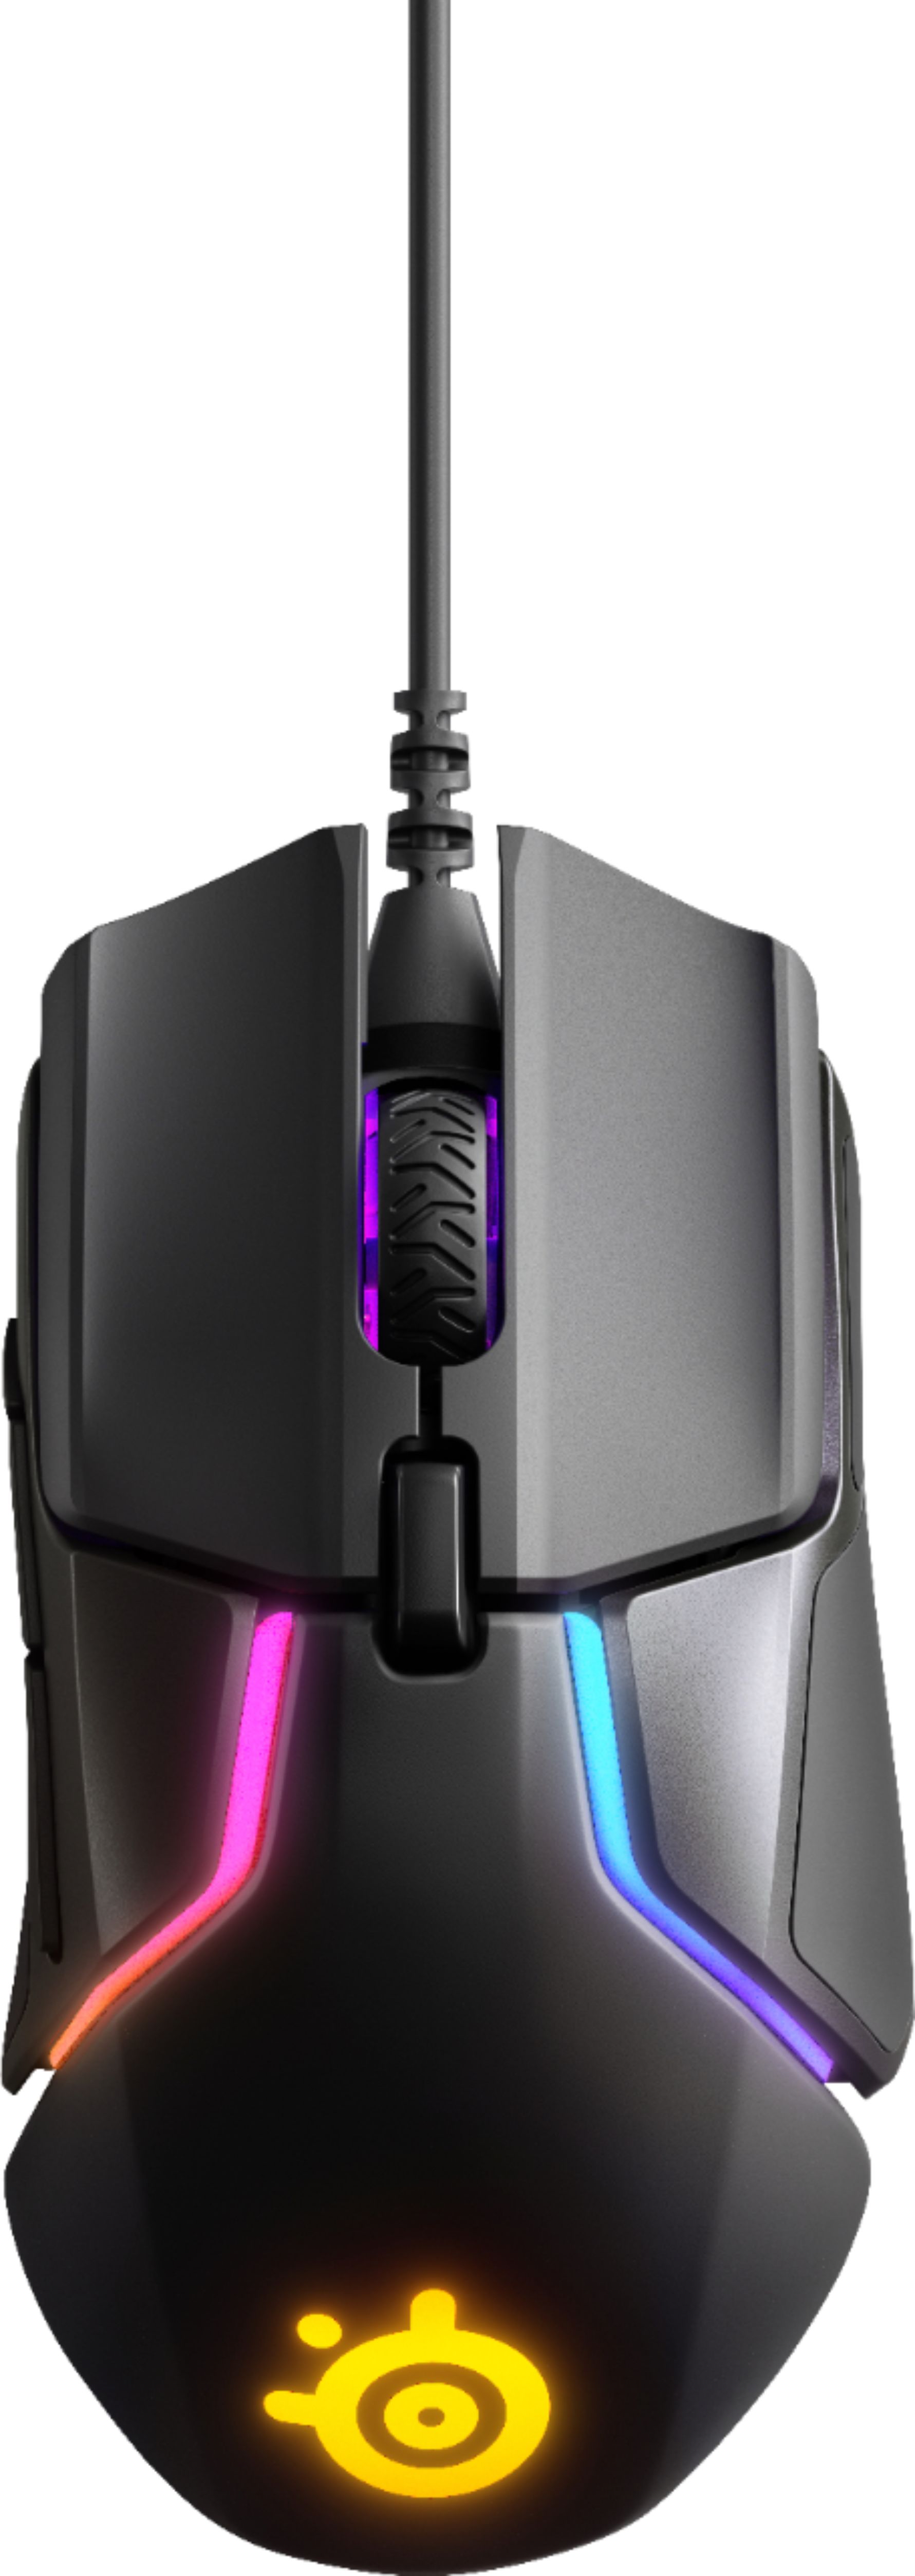 SteelSeries - Ratón óptico para juegos con cable Rival 600 con iluminación RGB - Negro